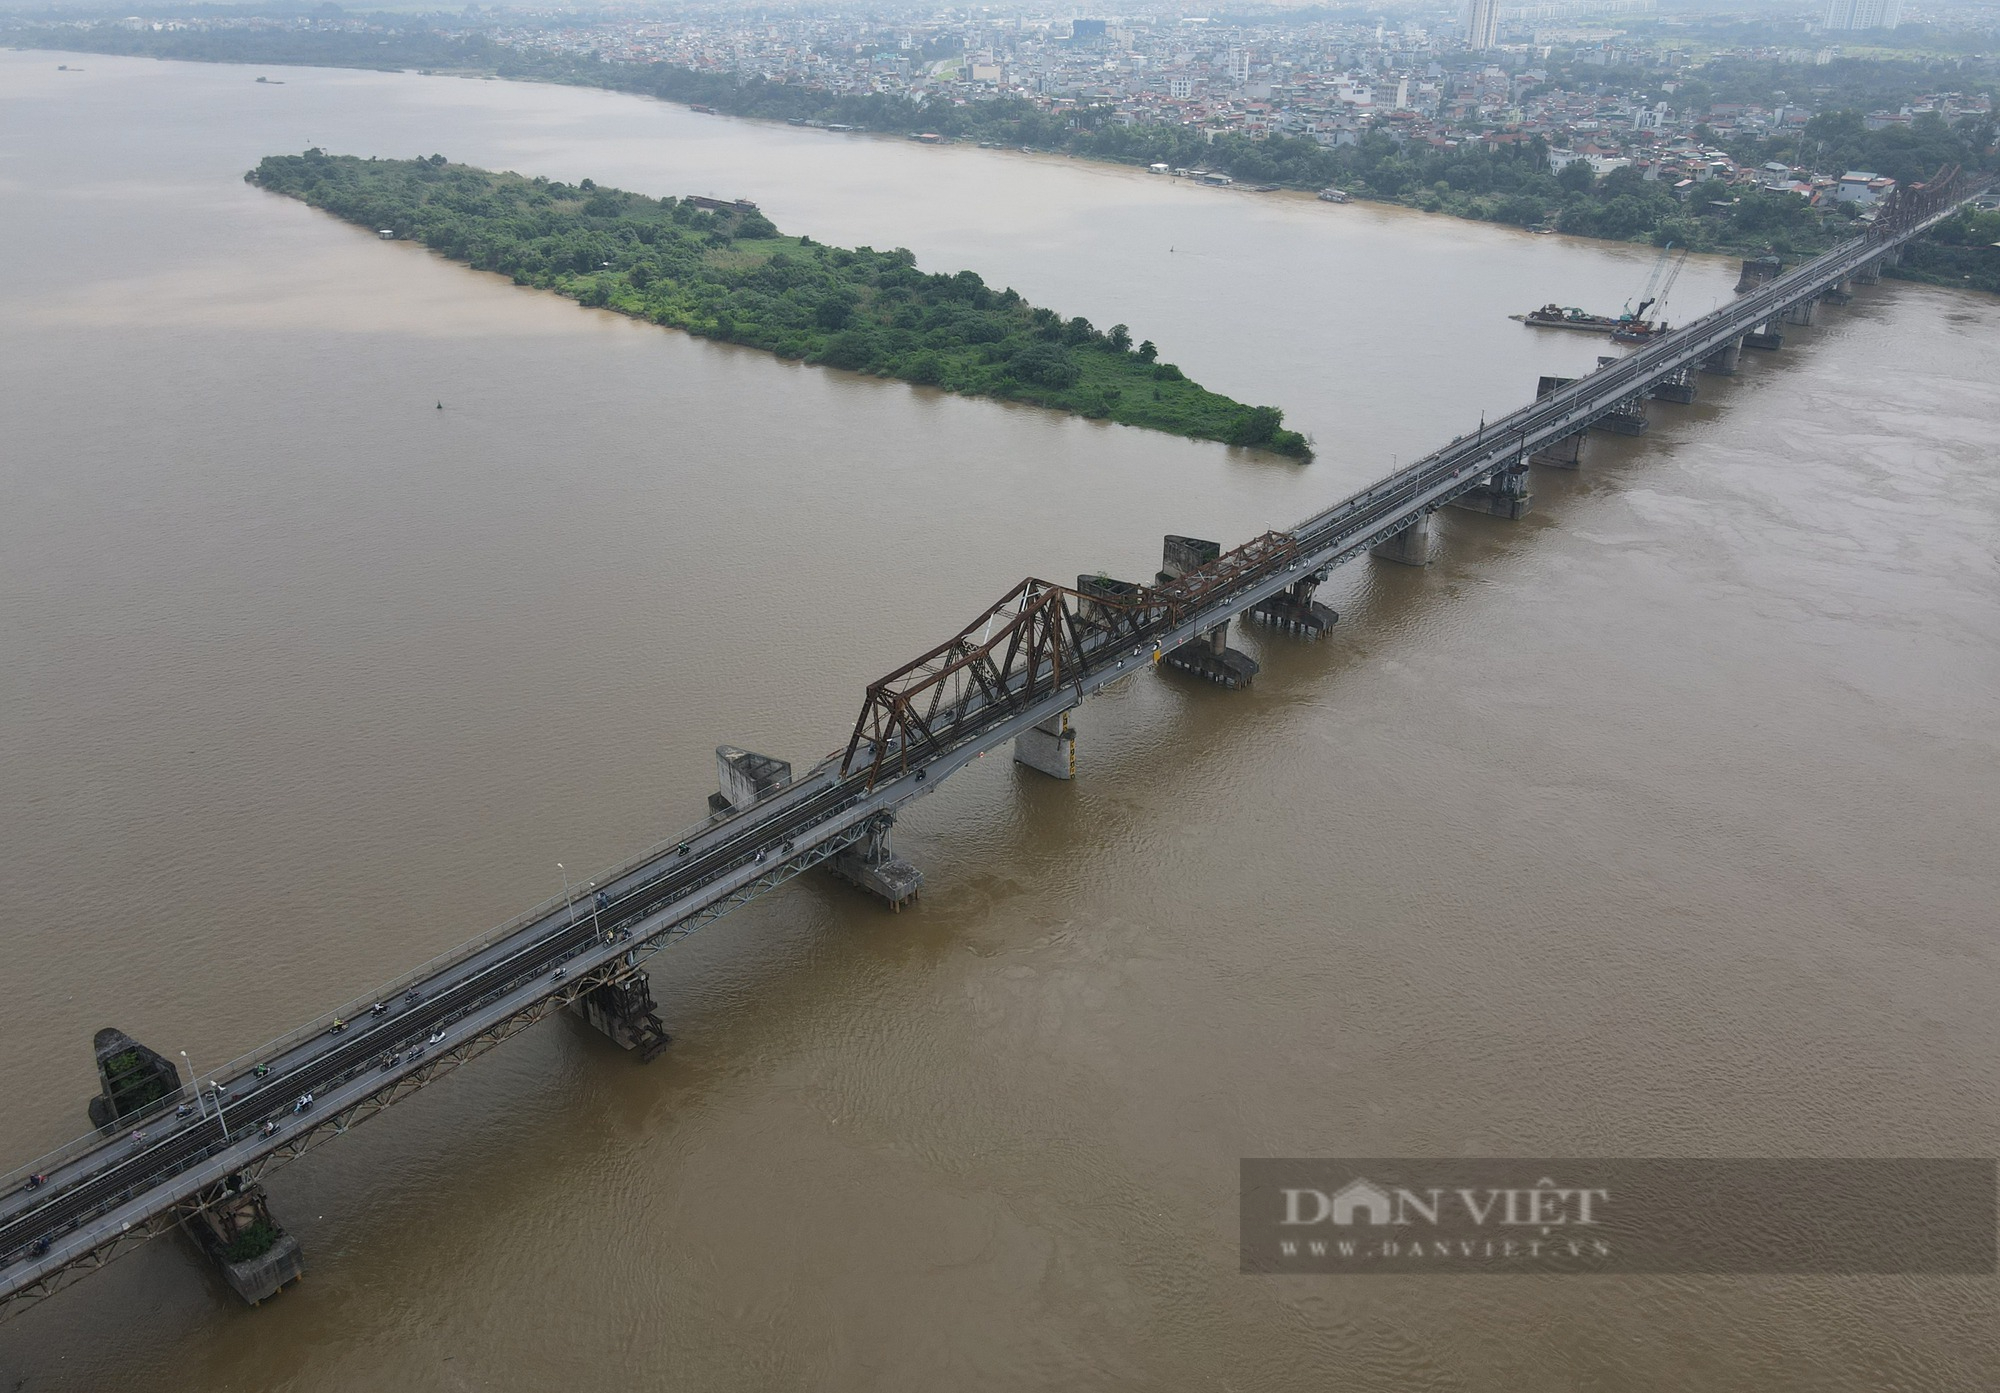 Cầu Long Biên, cây cầu bằng thép lớn tuổi nhất Việt Nam xuống cấp nghiêm trọng - Ảnh 14.